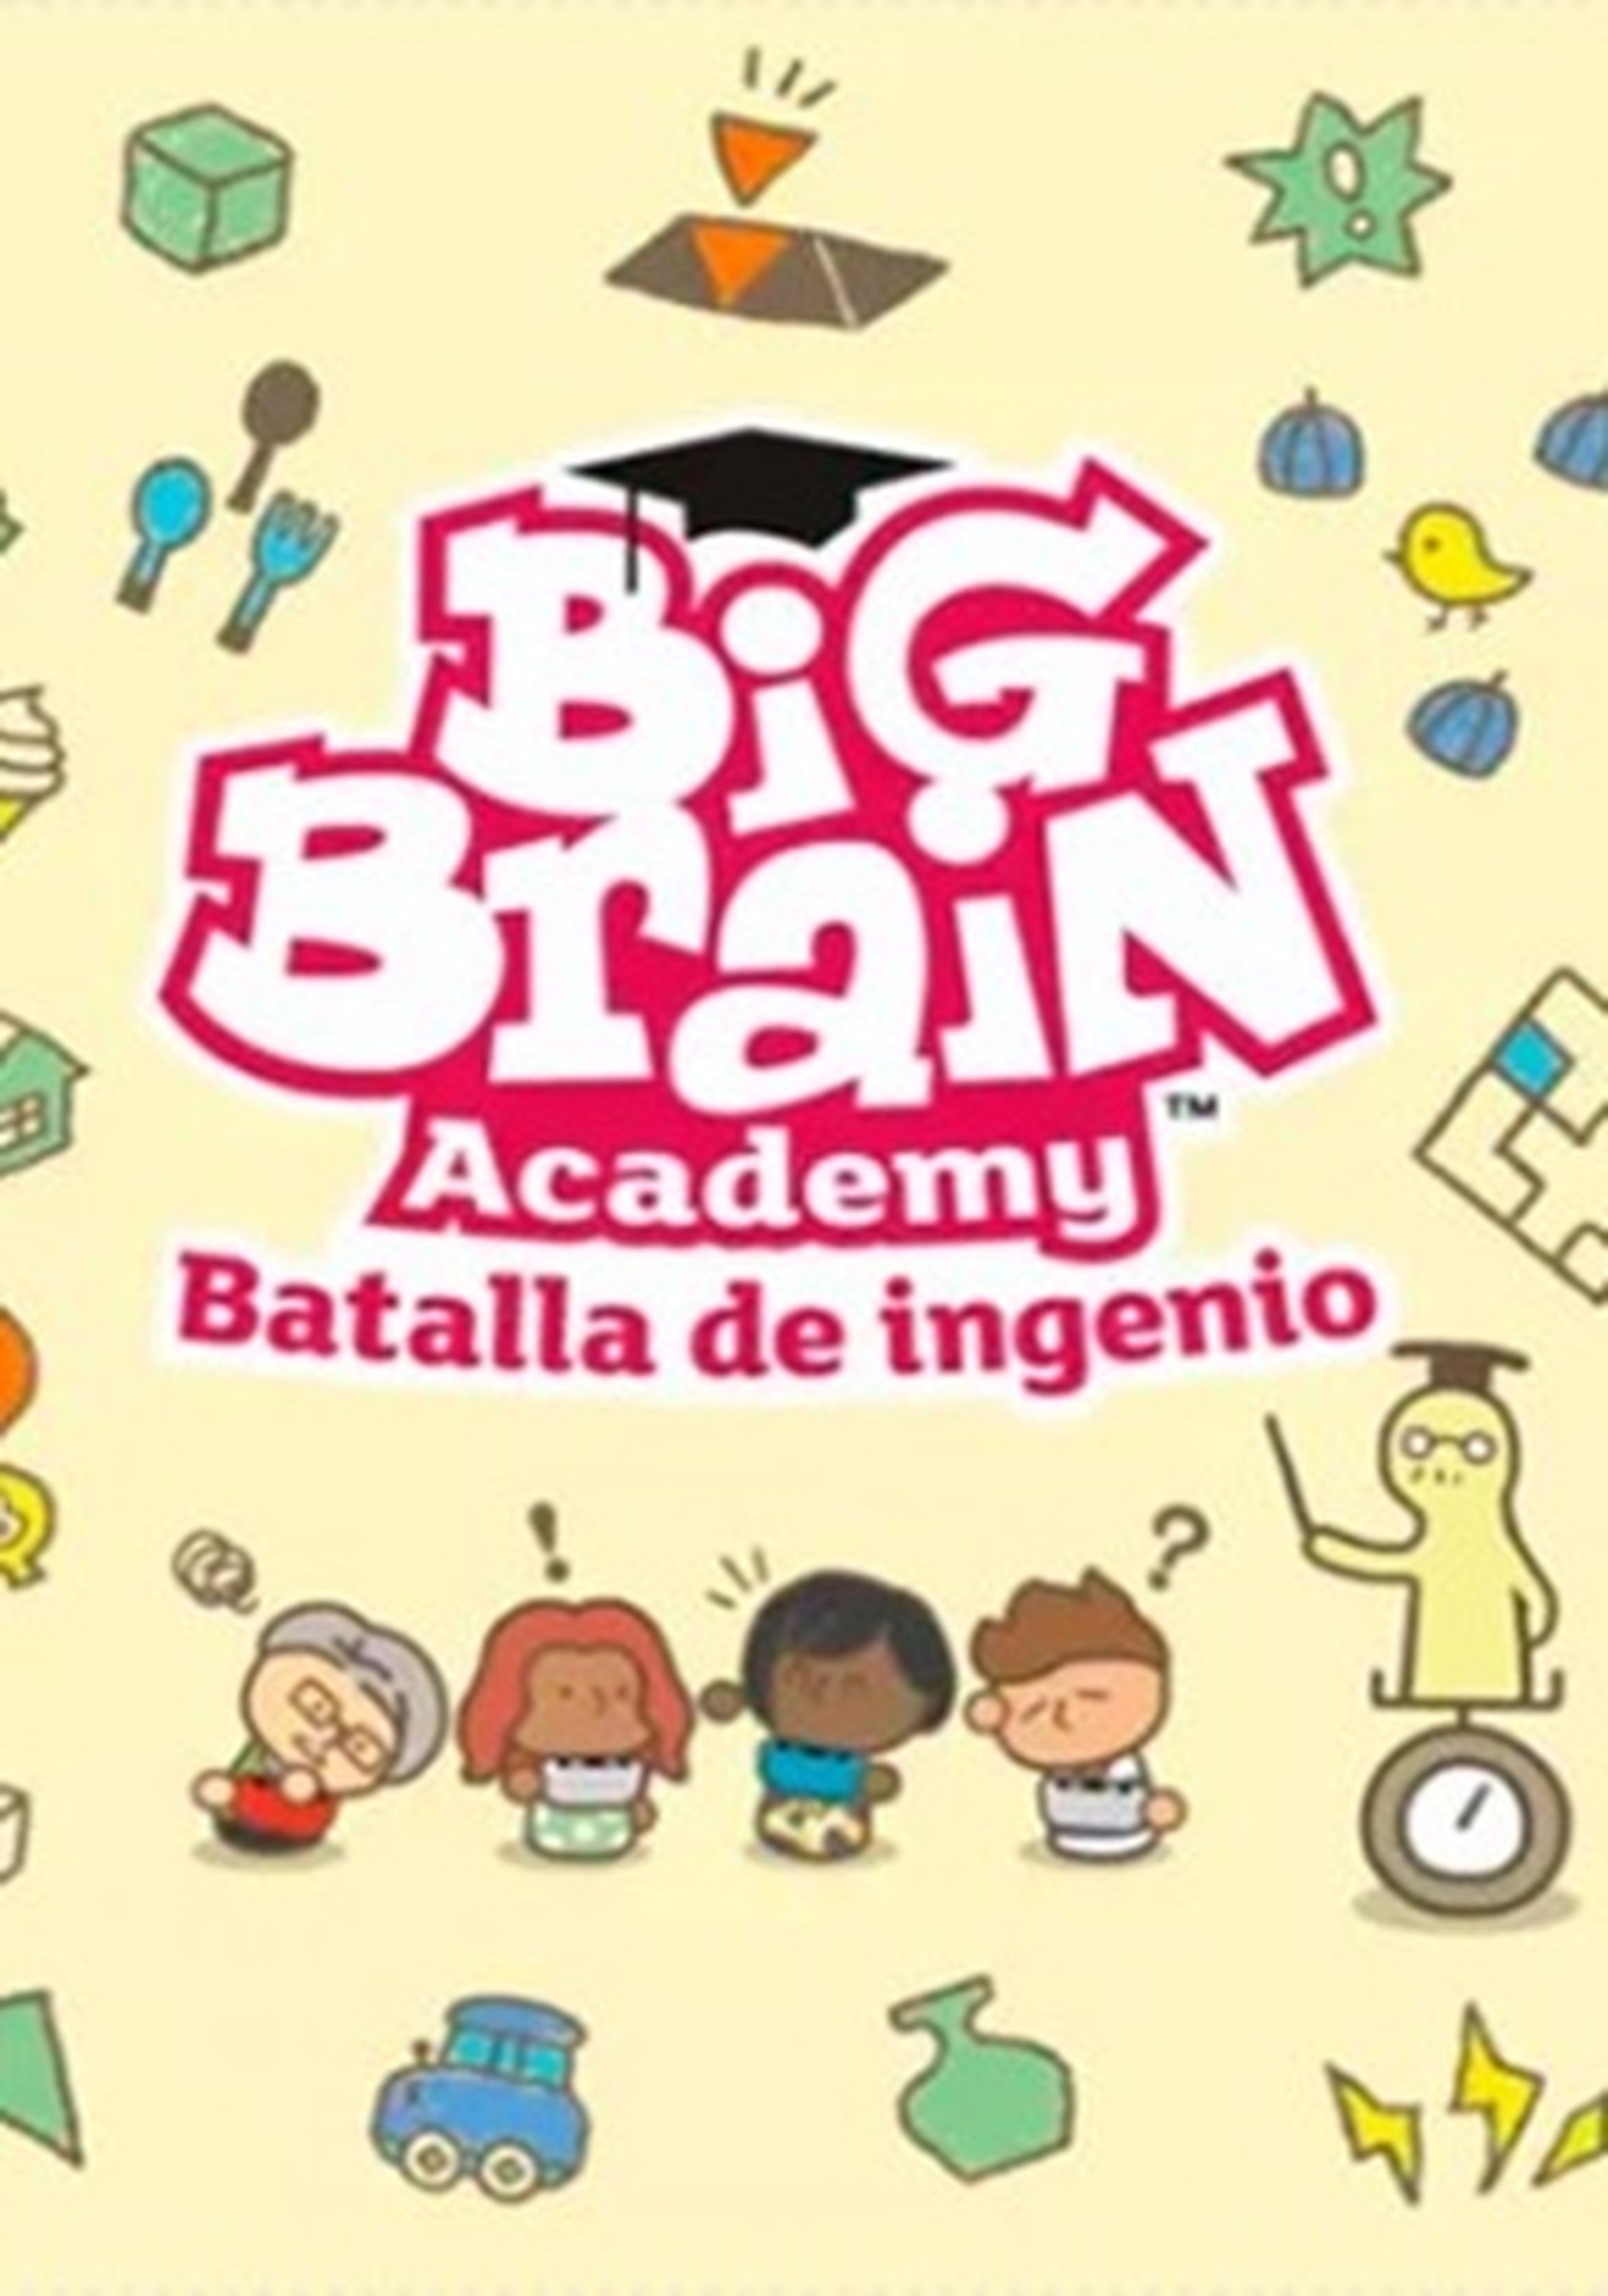 Big Brain Academy Batalla de ingenio cartel